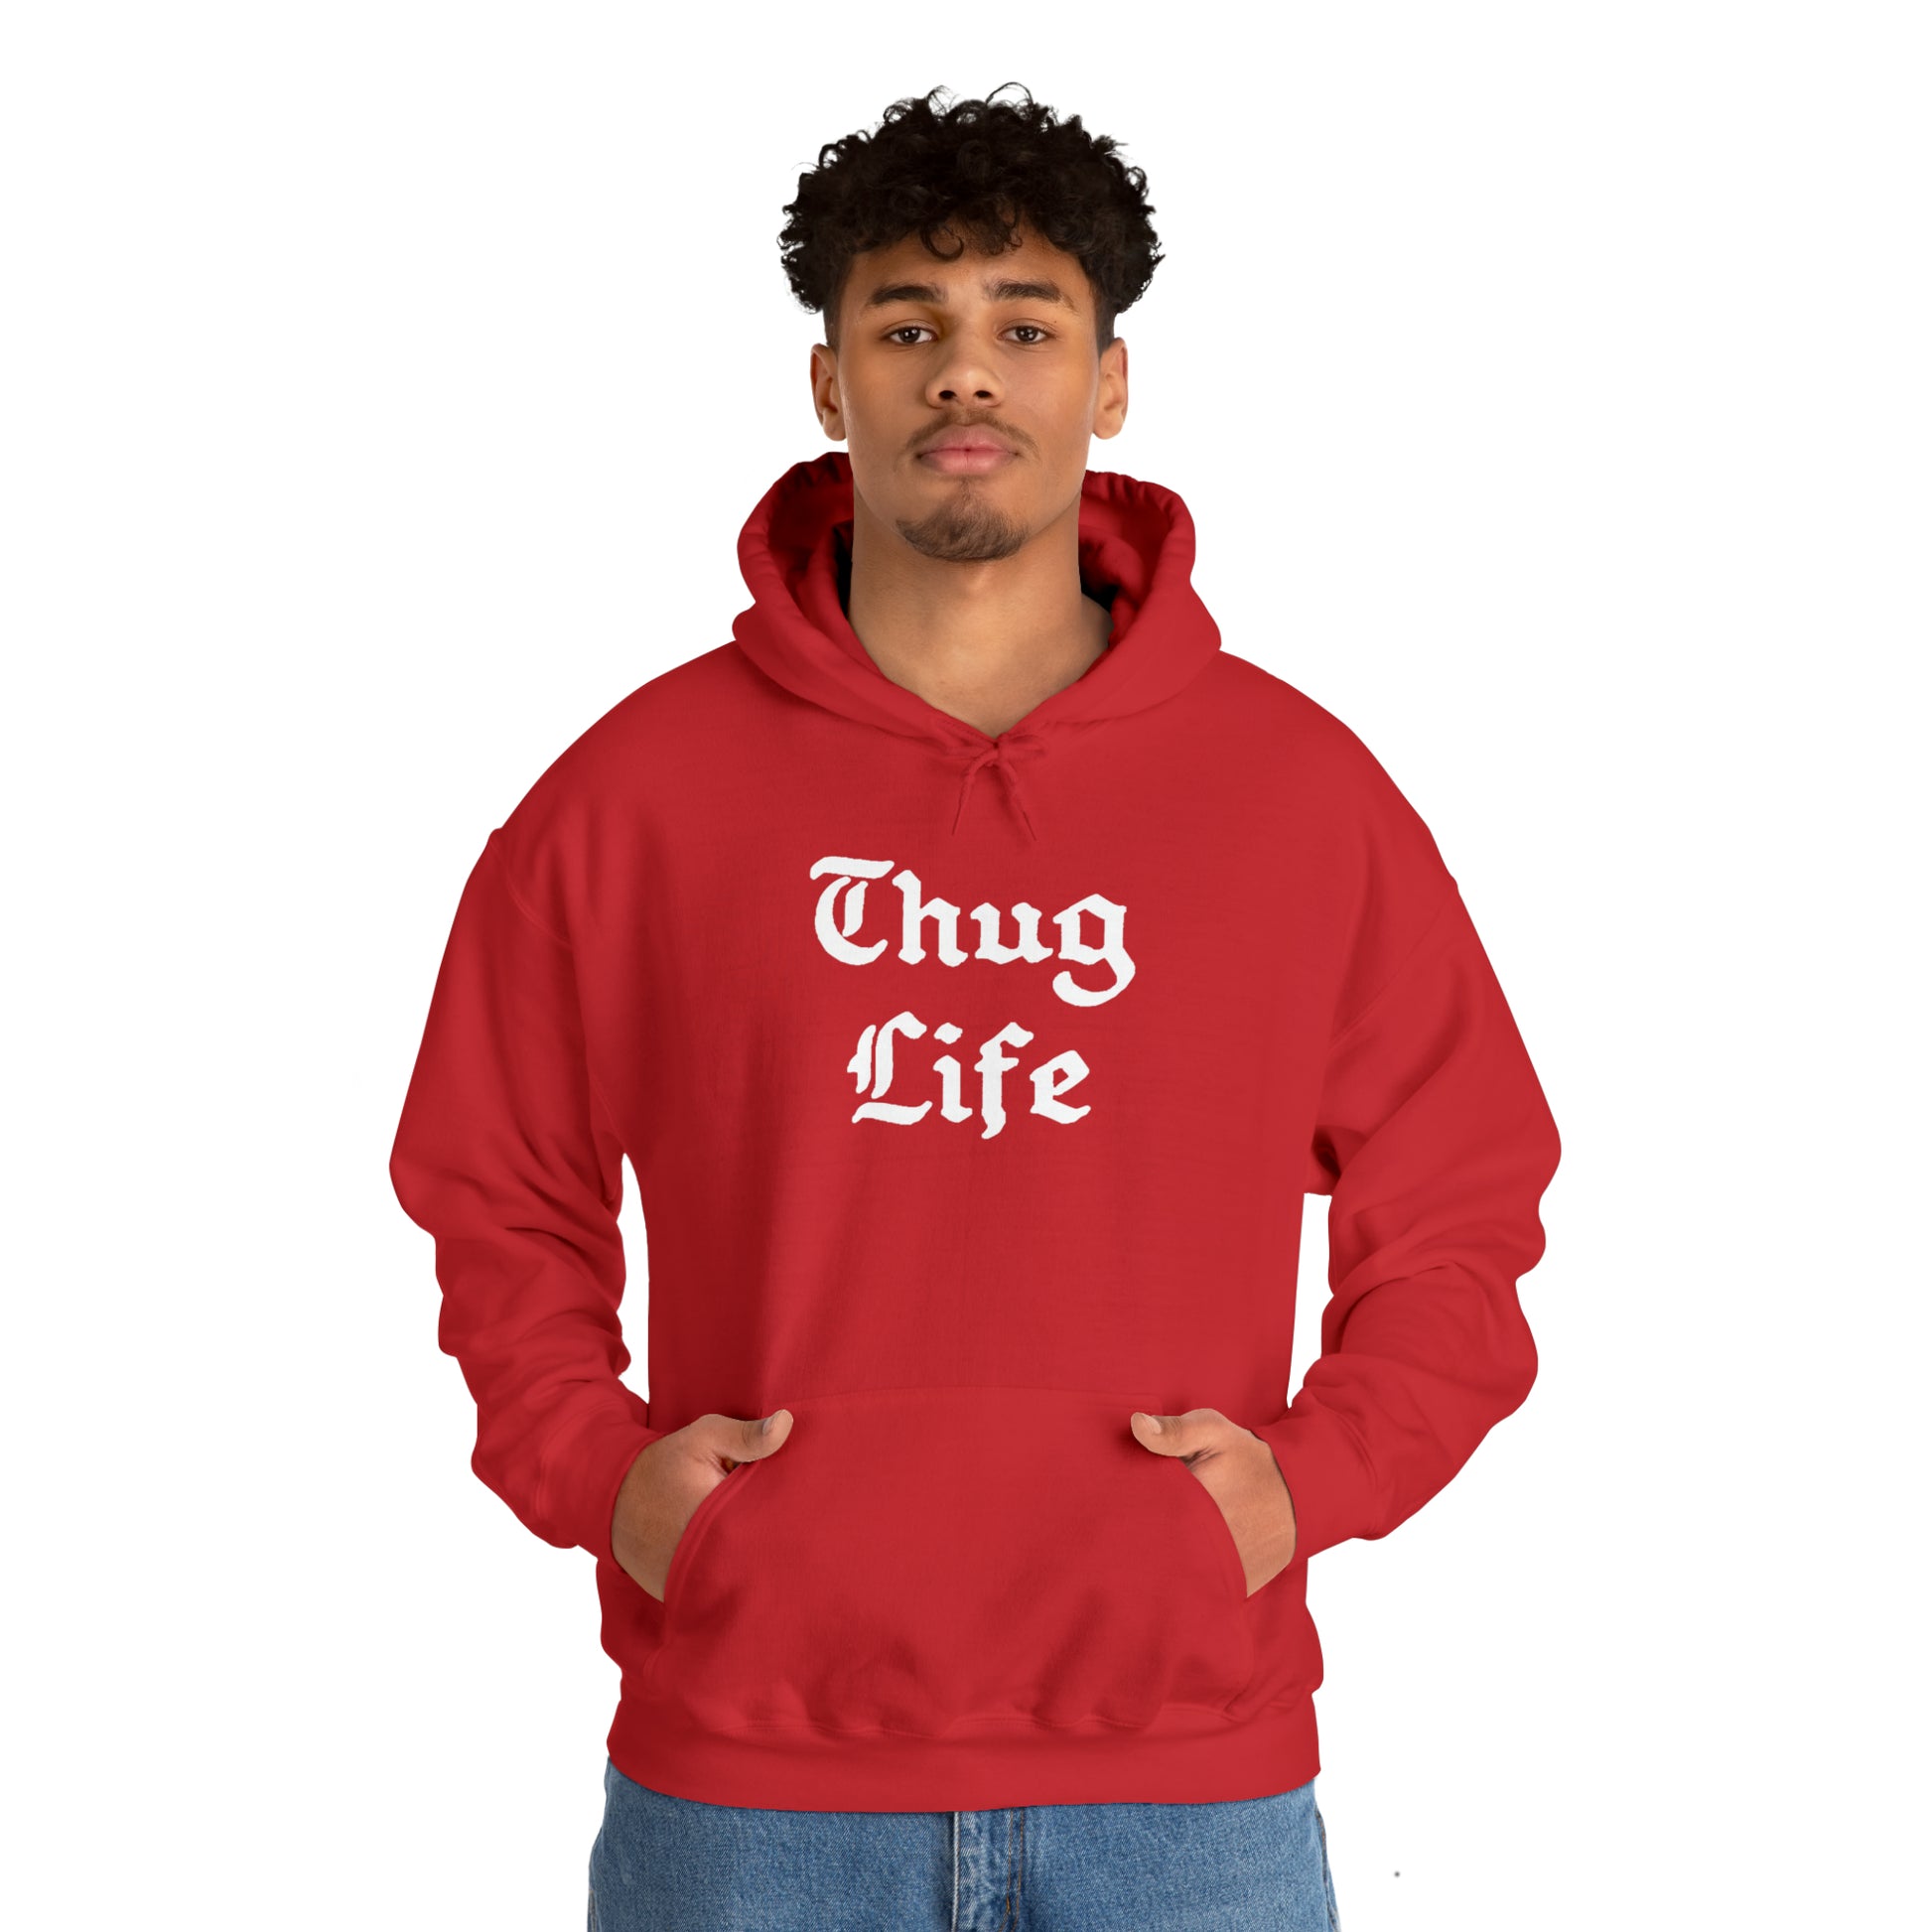 Boy wearing red Thug Life Hoodie